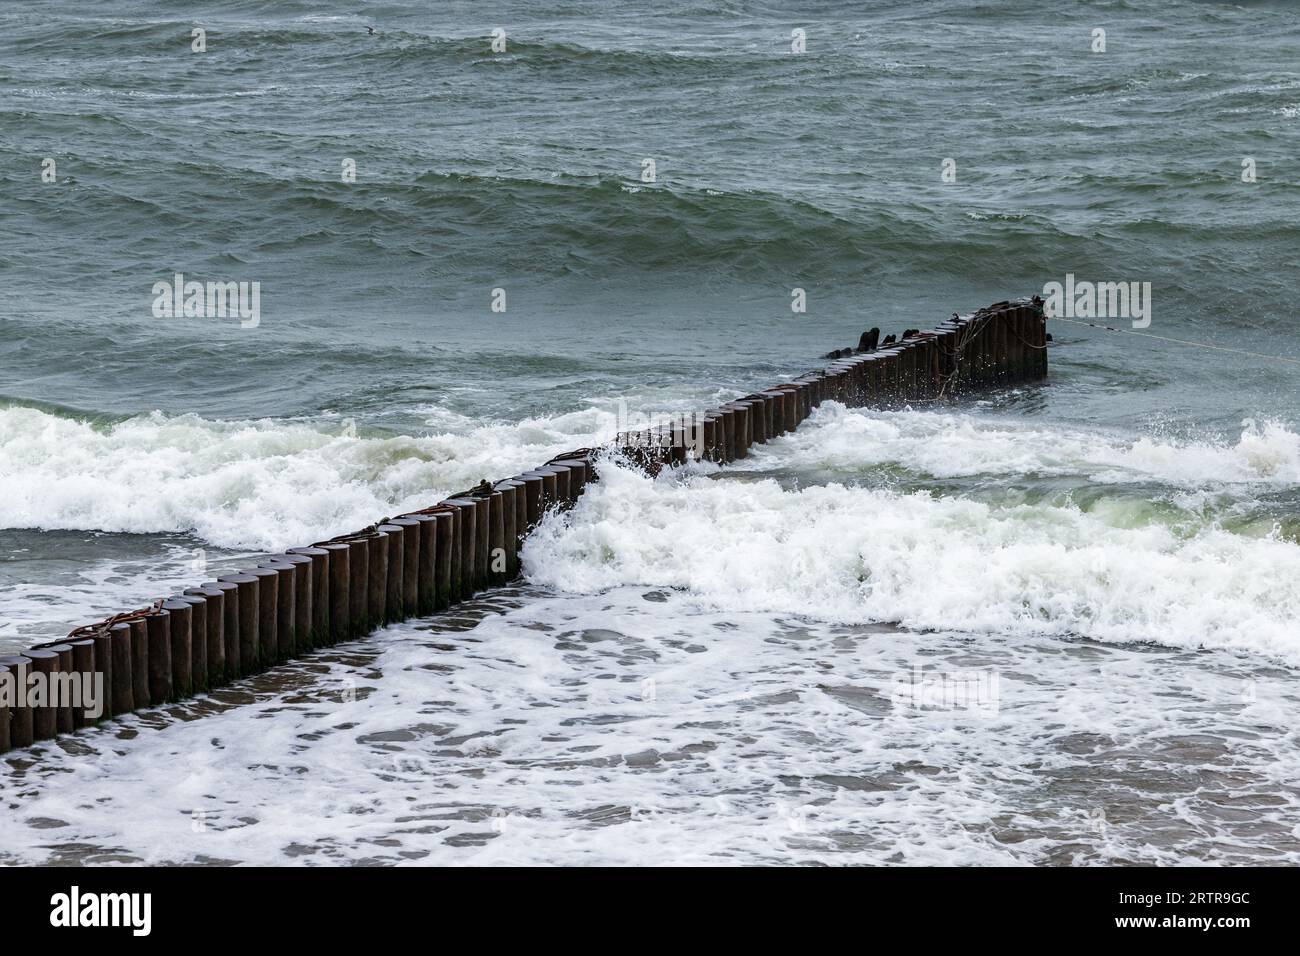 Le onde si infrangono sulla struttura di una parete di legno frangiflutti, sulla costa del Mar Baltico in un giorno d'estate. Zelenogradsk, regione di Kaliningrad, Russia Foto Stock